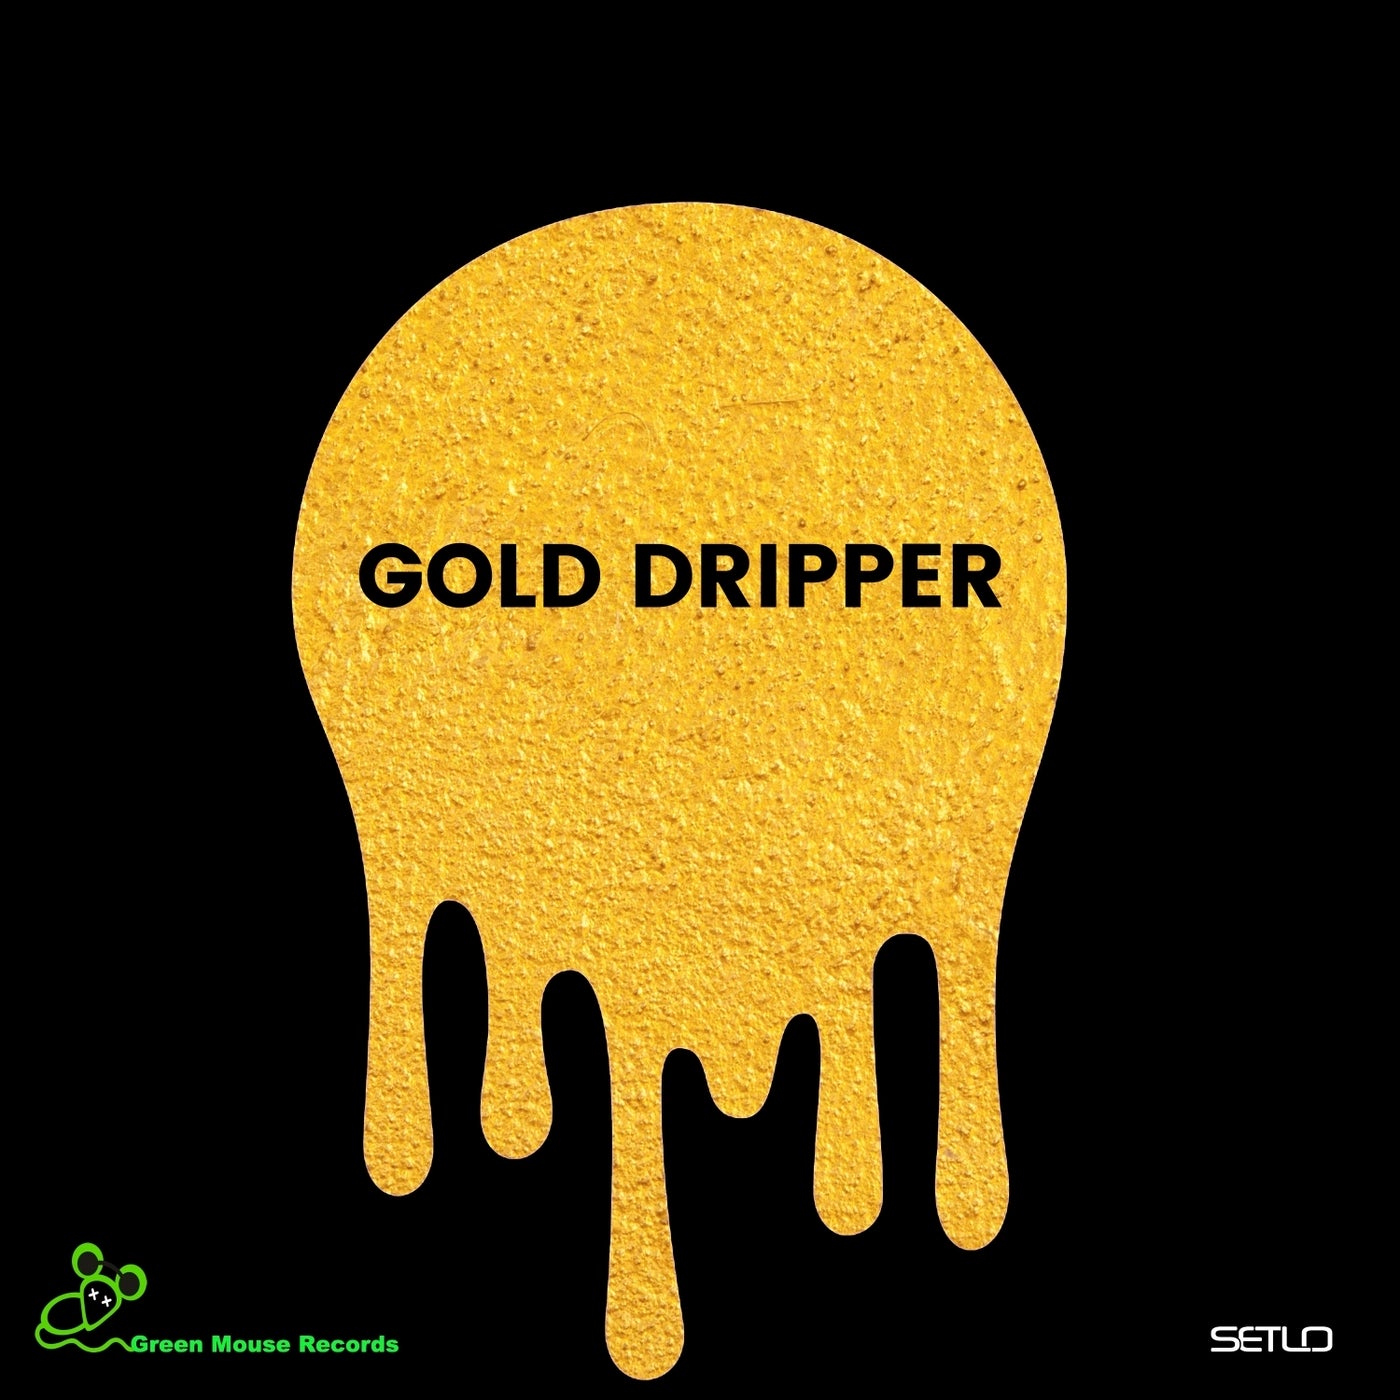 Gold Dripper